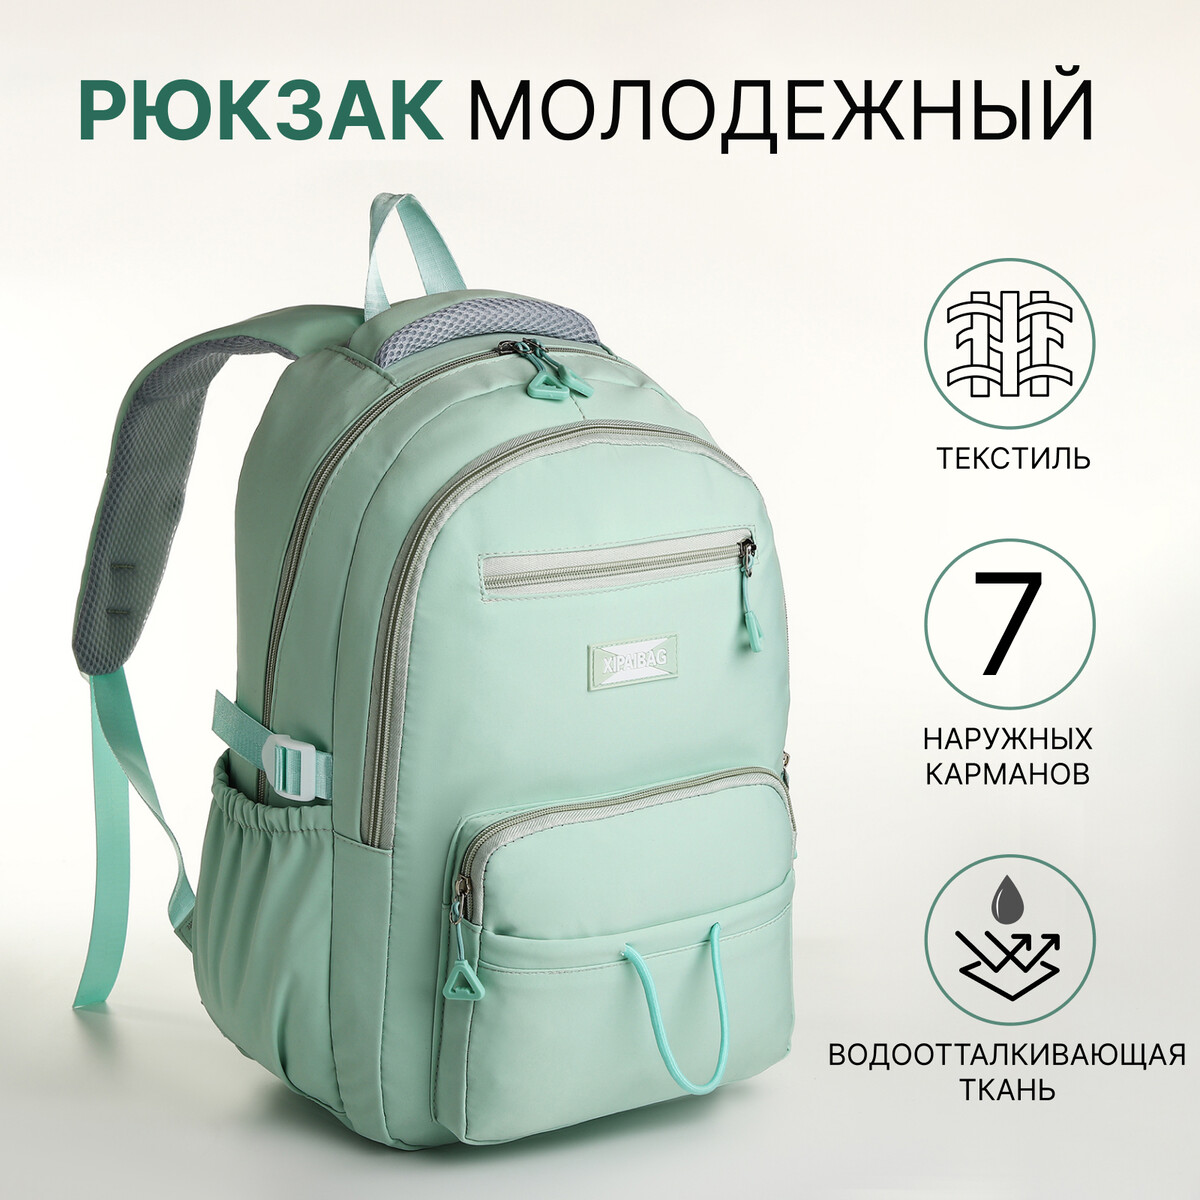 Рюкзак школьный из текстиля на молнии, 7 карманов, цвет зеленый рюкзак школьный из текстиля на молнии 7 карманов зеленый